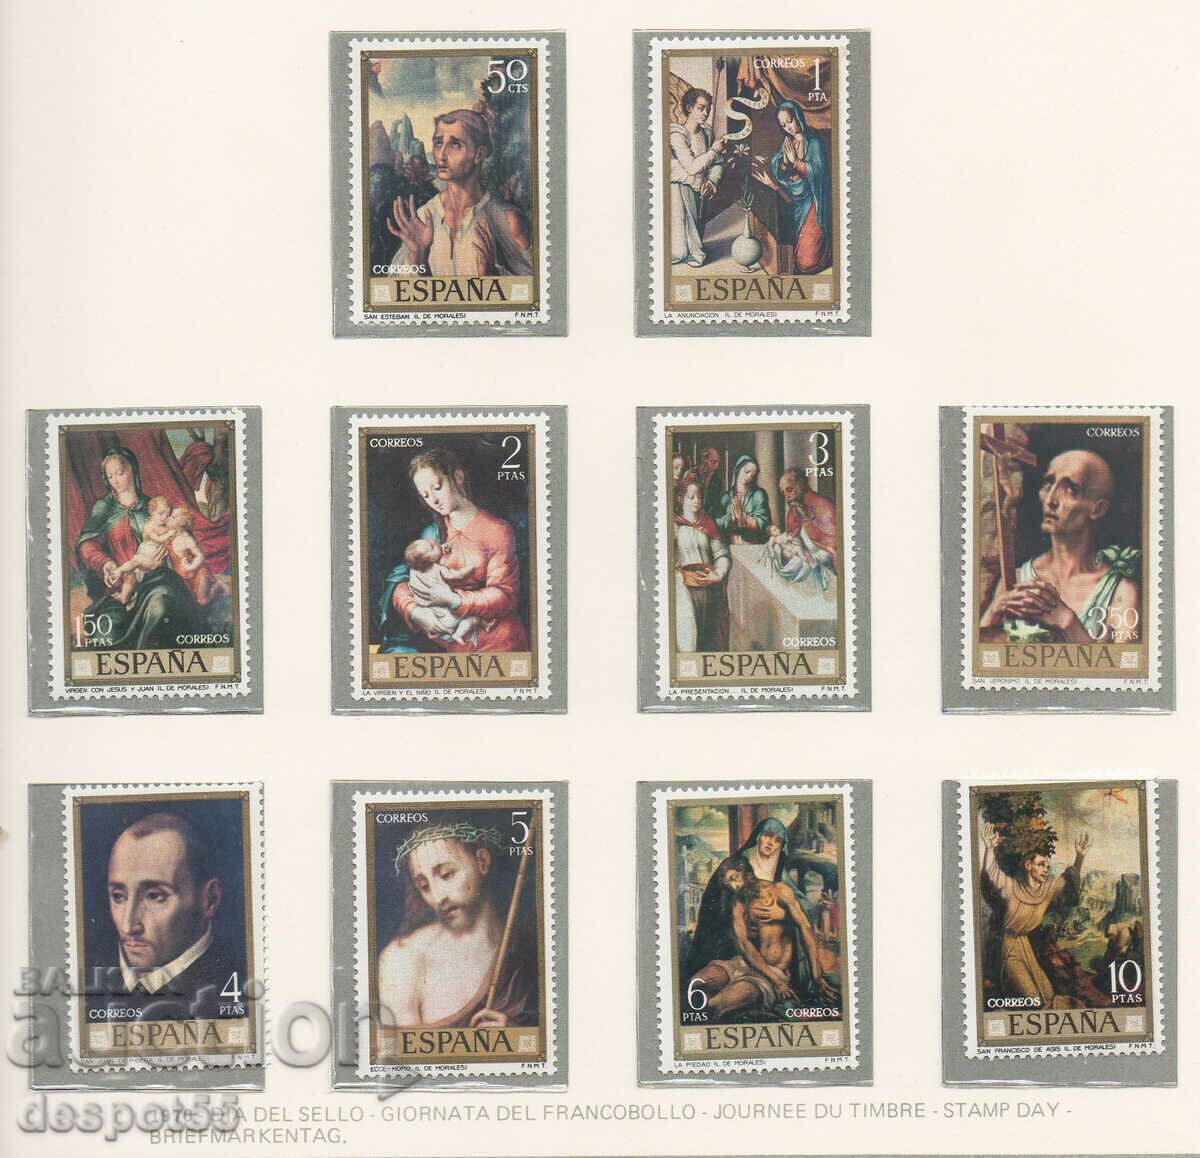 1970. Spain. Postage Stamp Day - Luis Morales.